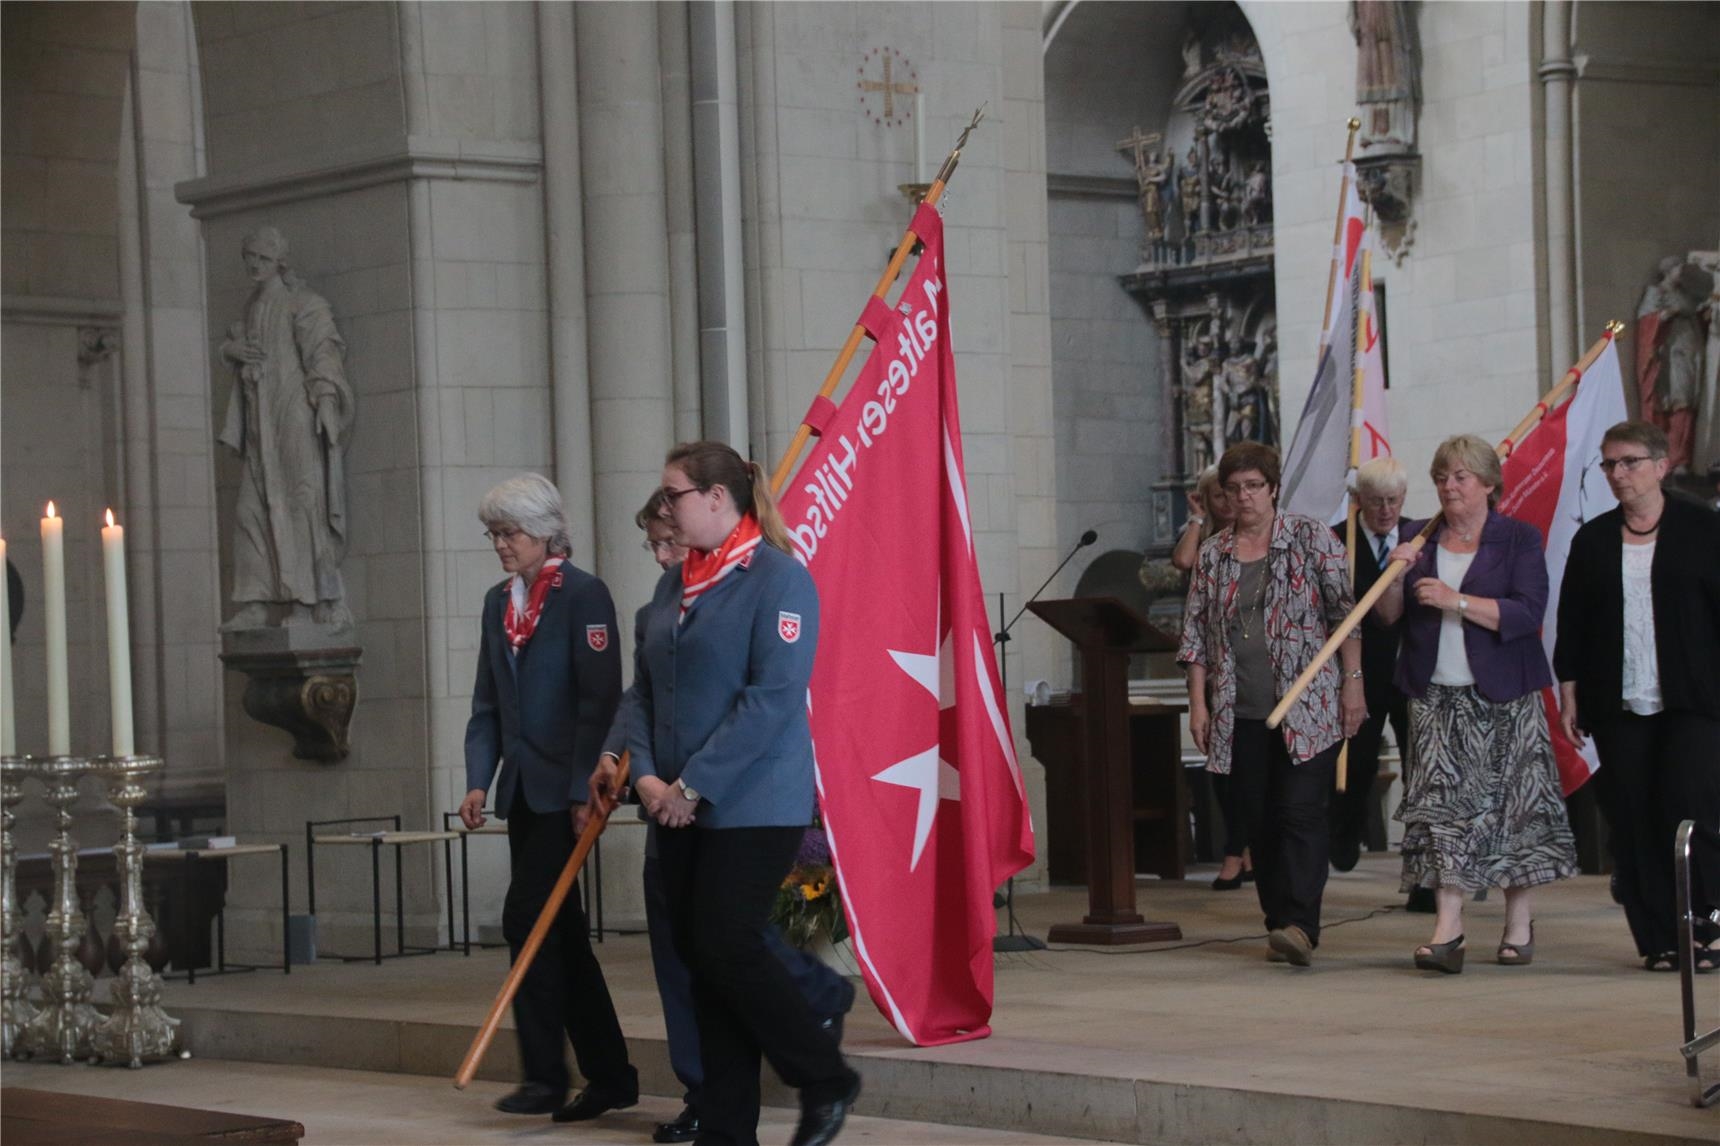 Das Foto zeigt Kleingruppen von Menschen, die mit großen Bannern aus dem Dom ziehen. (Harald Westbeld)